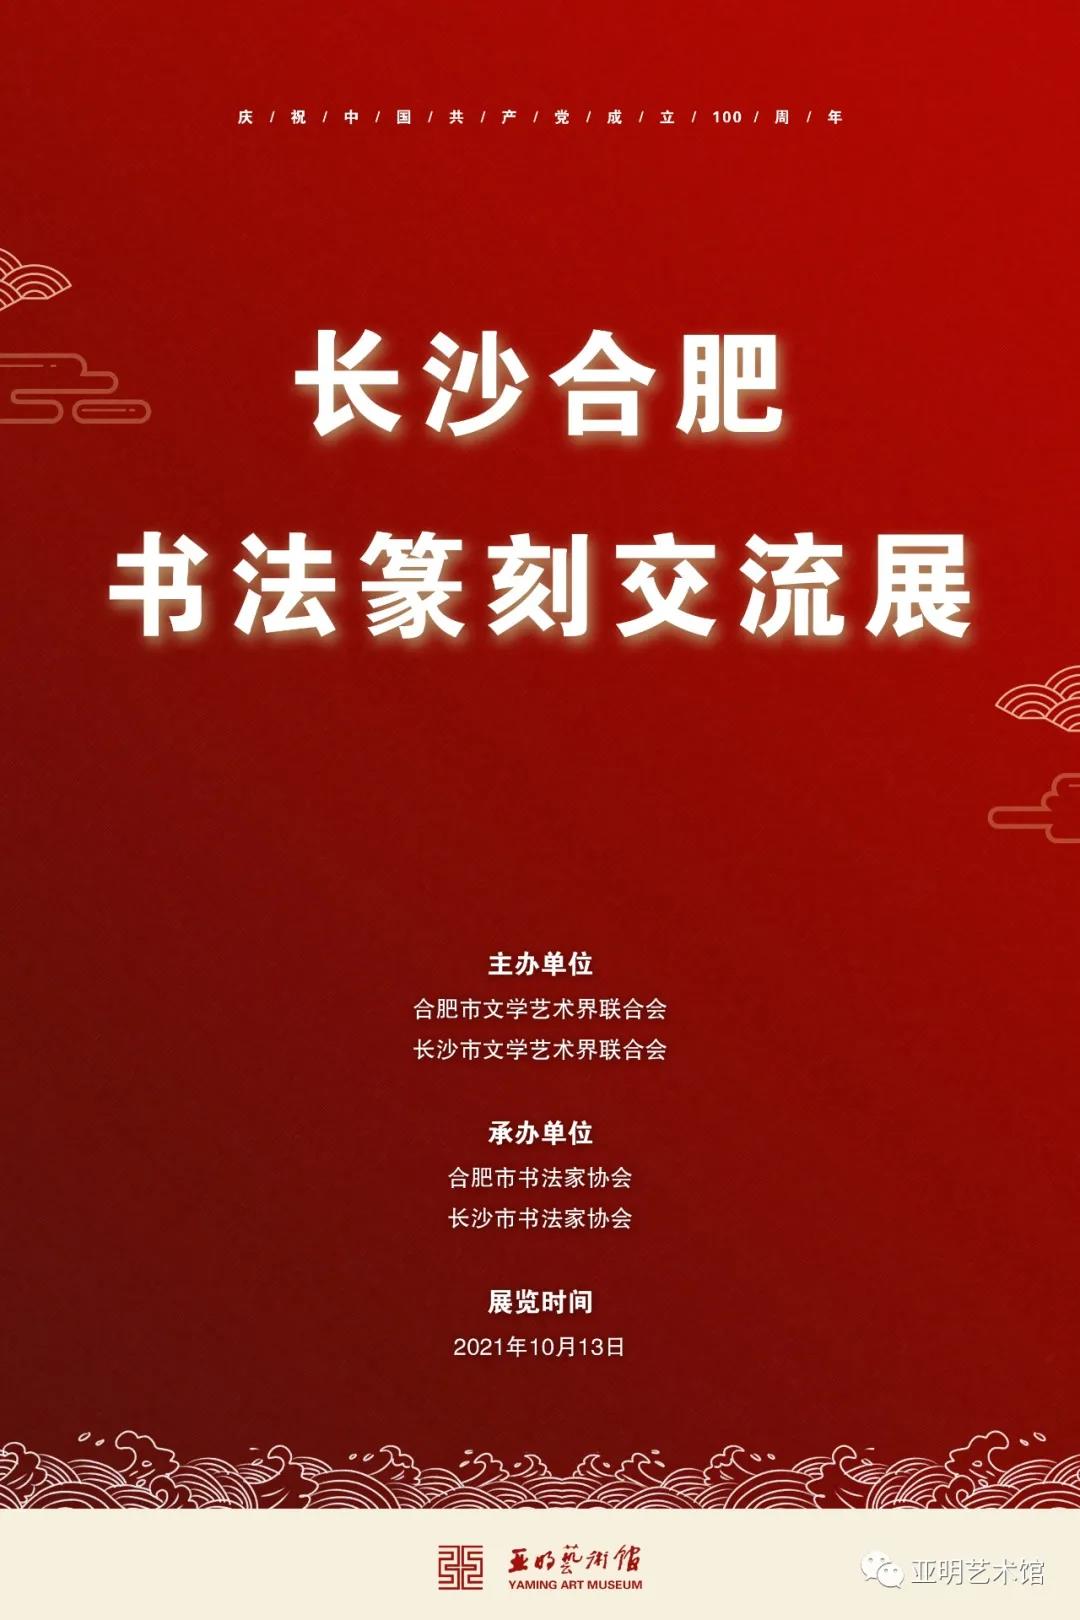 展讯 | “长沙合肥书法篆刻交流展”已于亚明艺术馆开幕(图1)